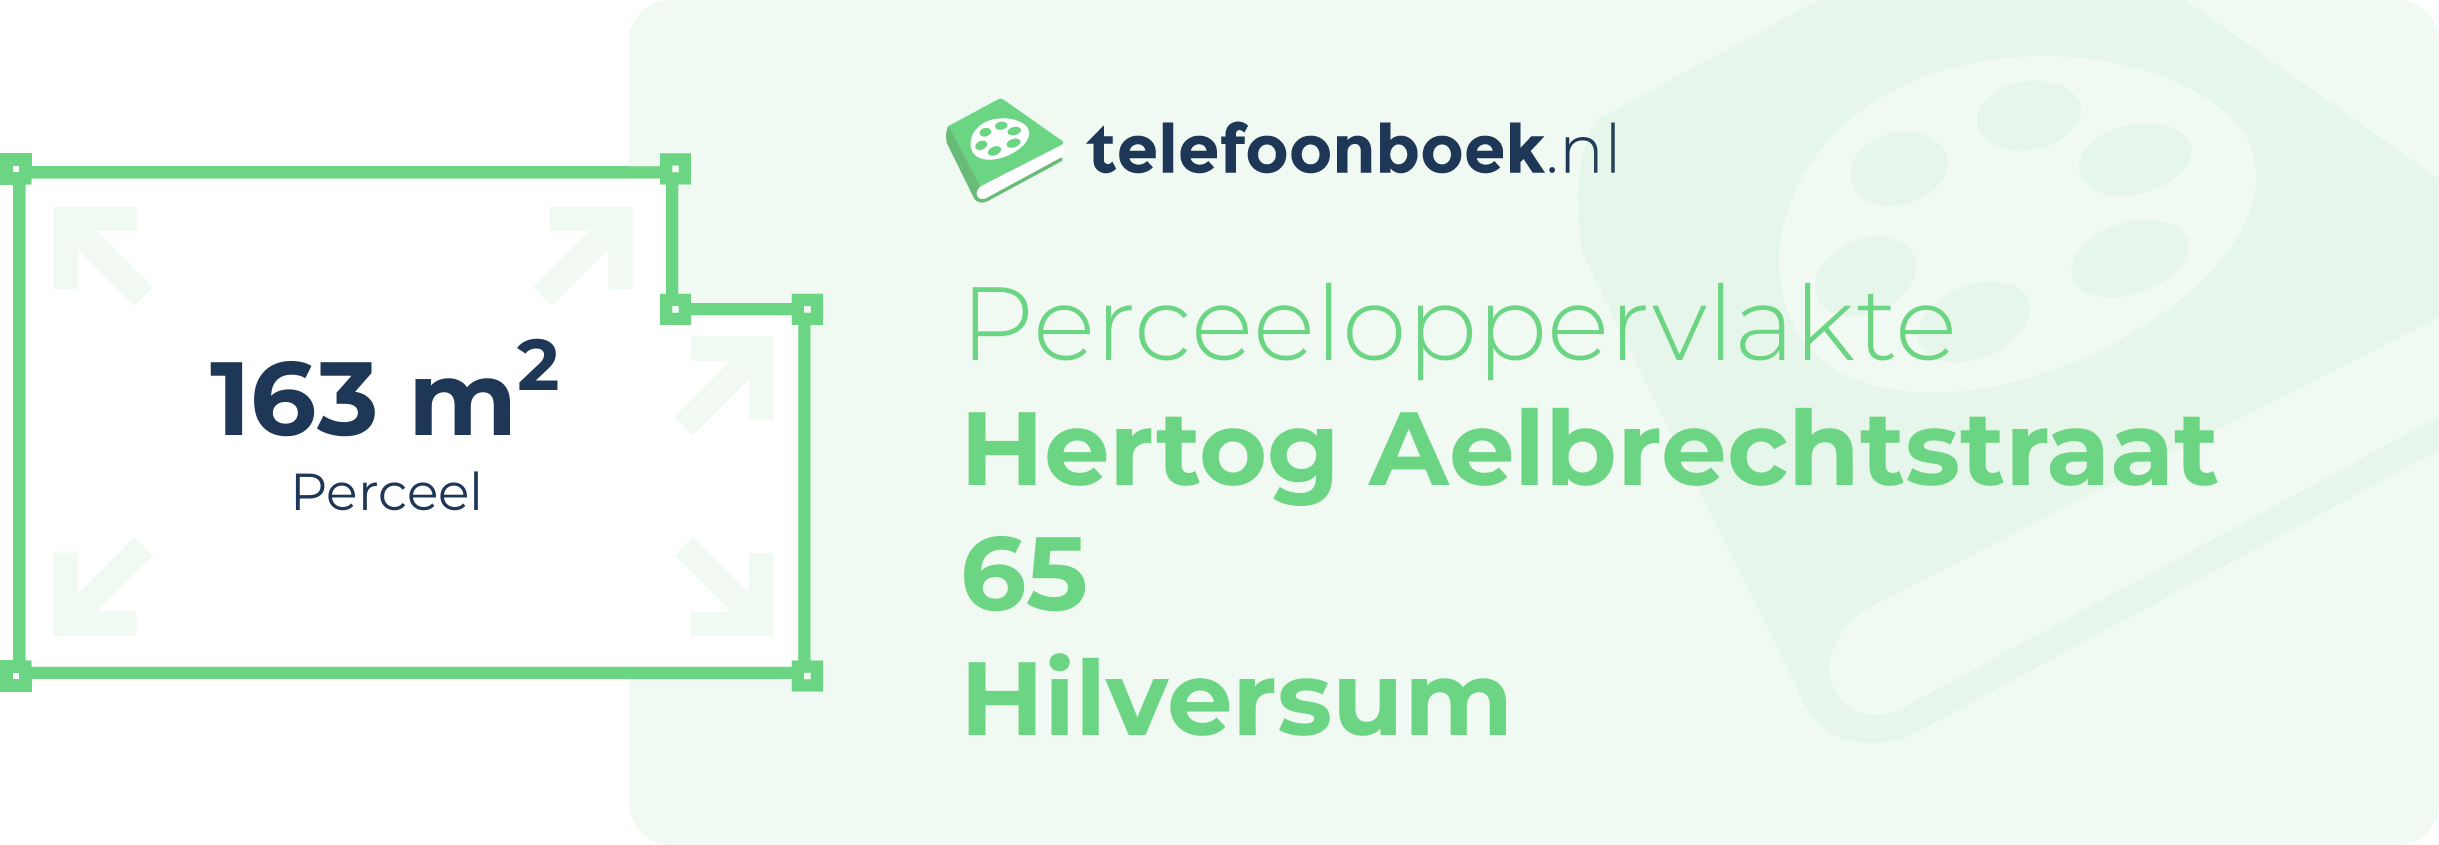 Perceeloppervlakte Hertog Aelbrechtstraat 65 Hilversum